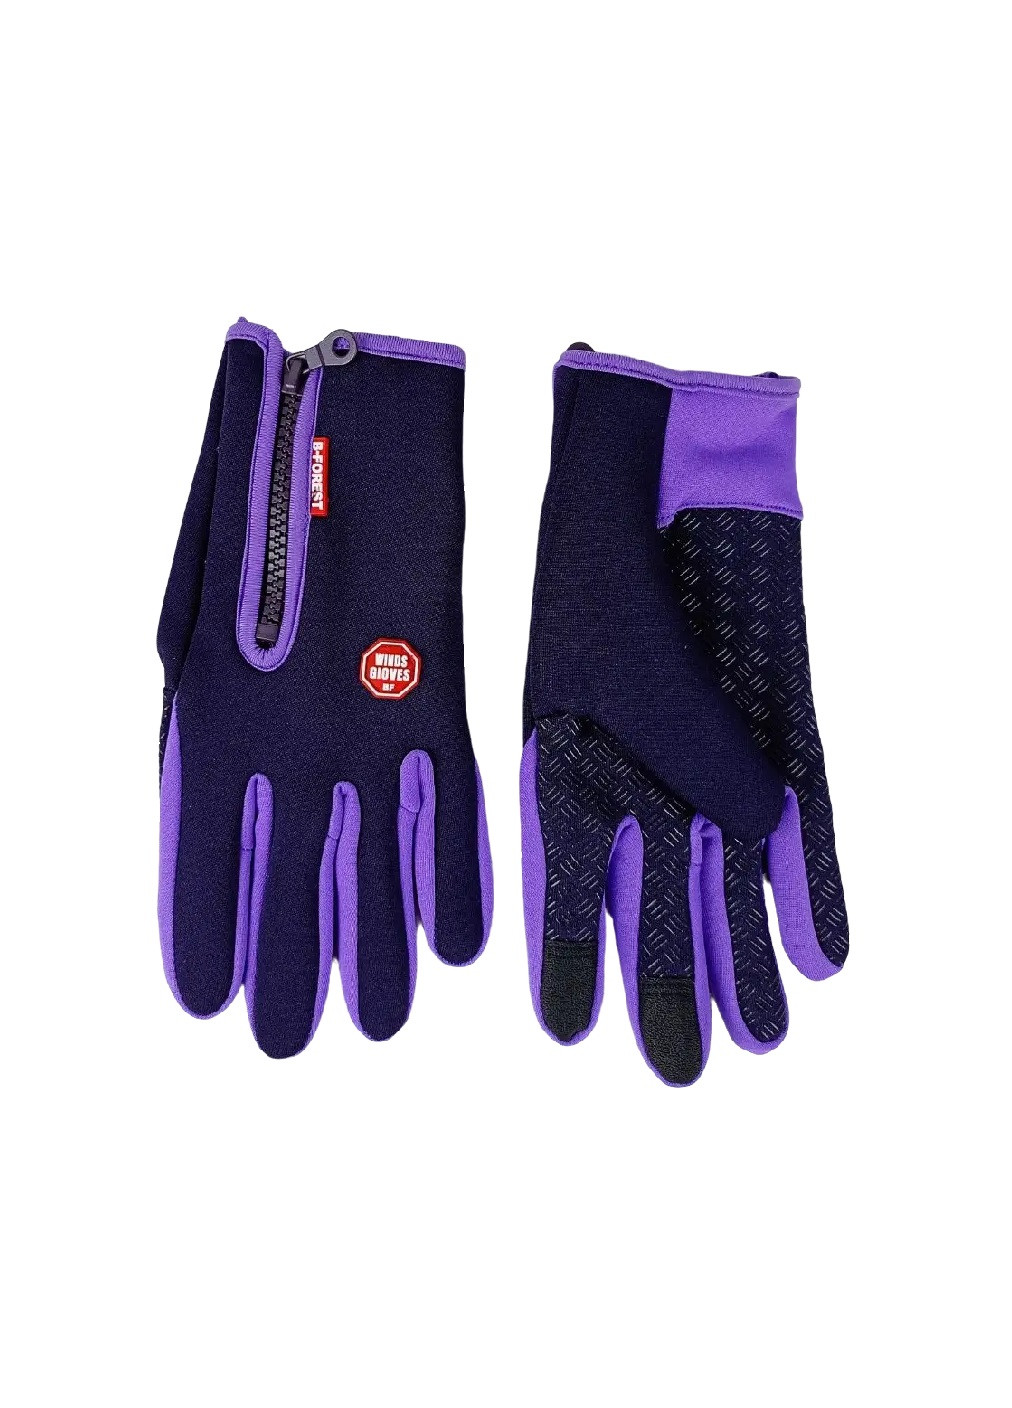 Велоперчатки велосипедные перчатки с водоотталкивающим сенсорным покрытием спандекс флис (476030-Prob) Фиолетовые L Unbranded (275863530)